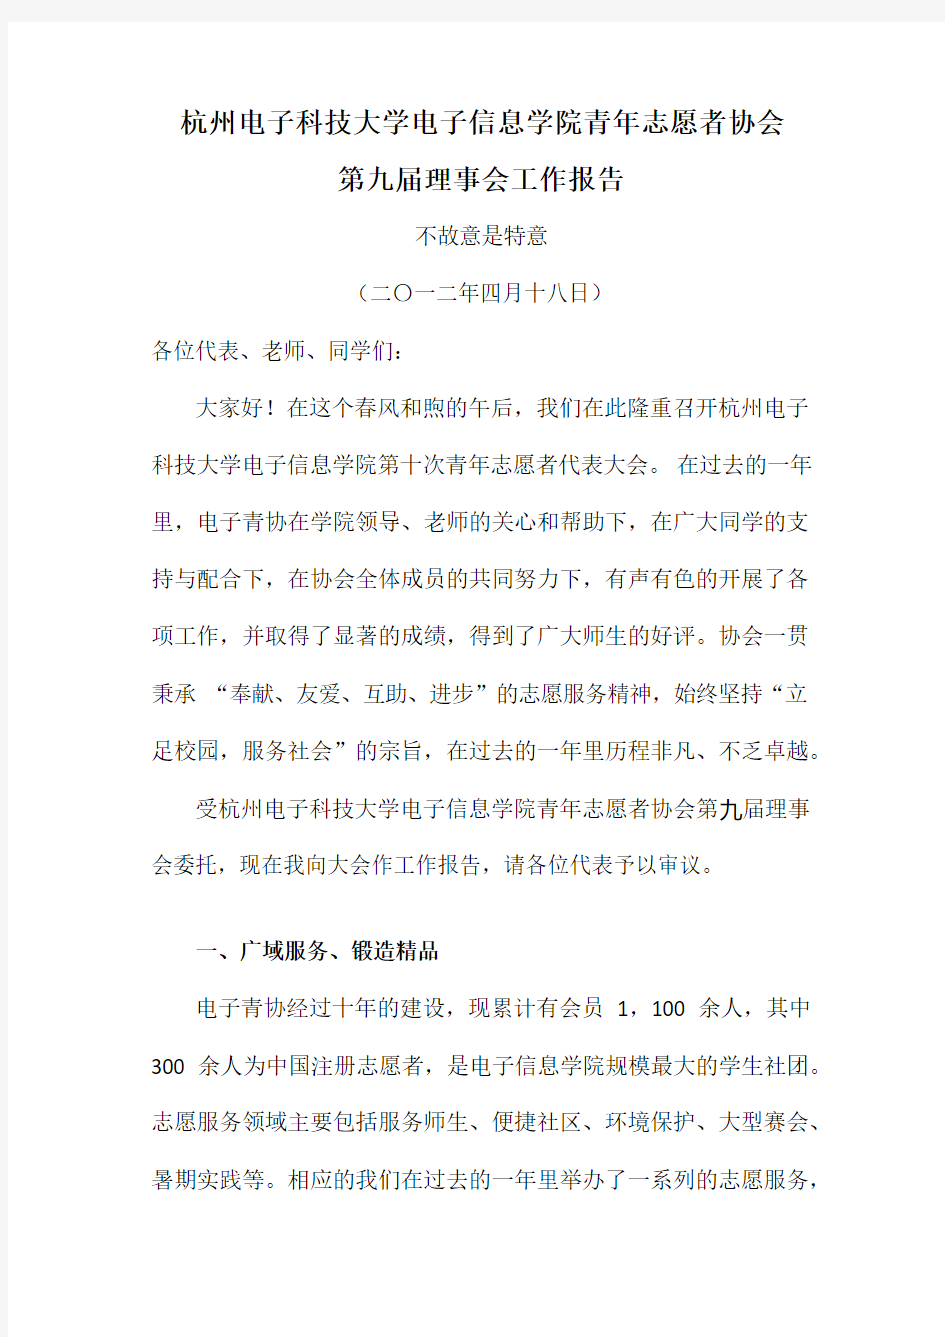 杭州电子科技大学电子信息学院青年志愿者协会 第九届理事会工作报告